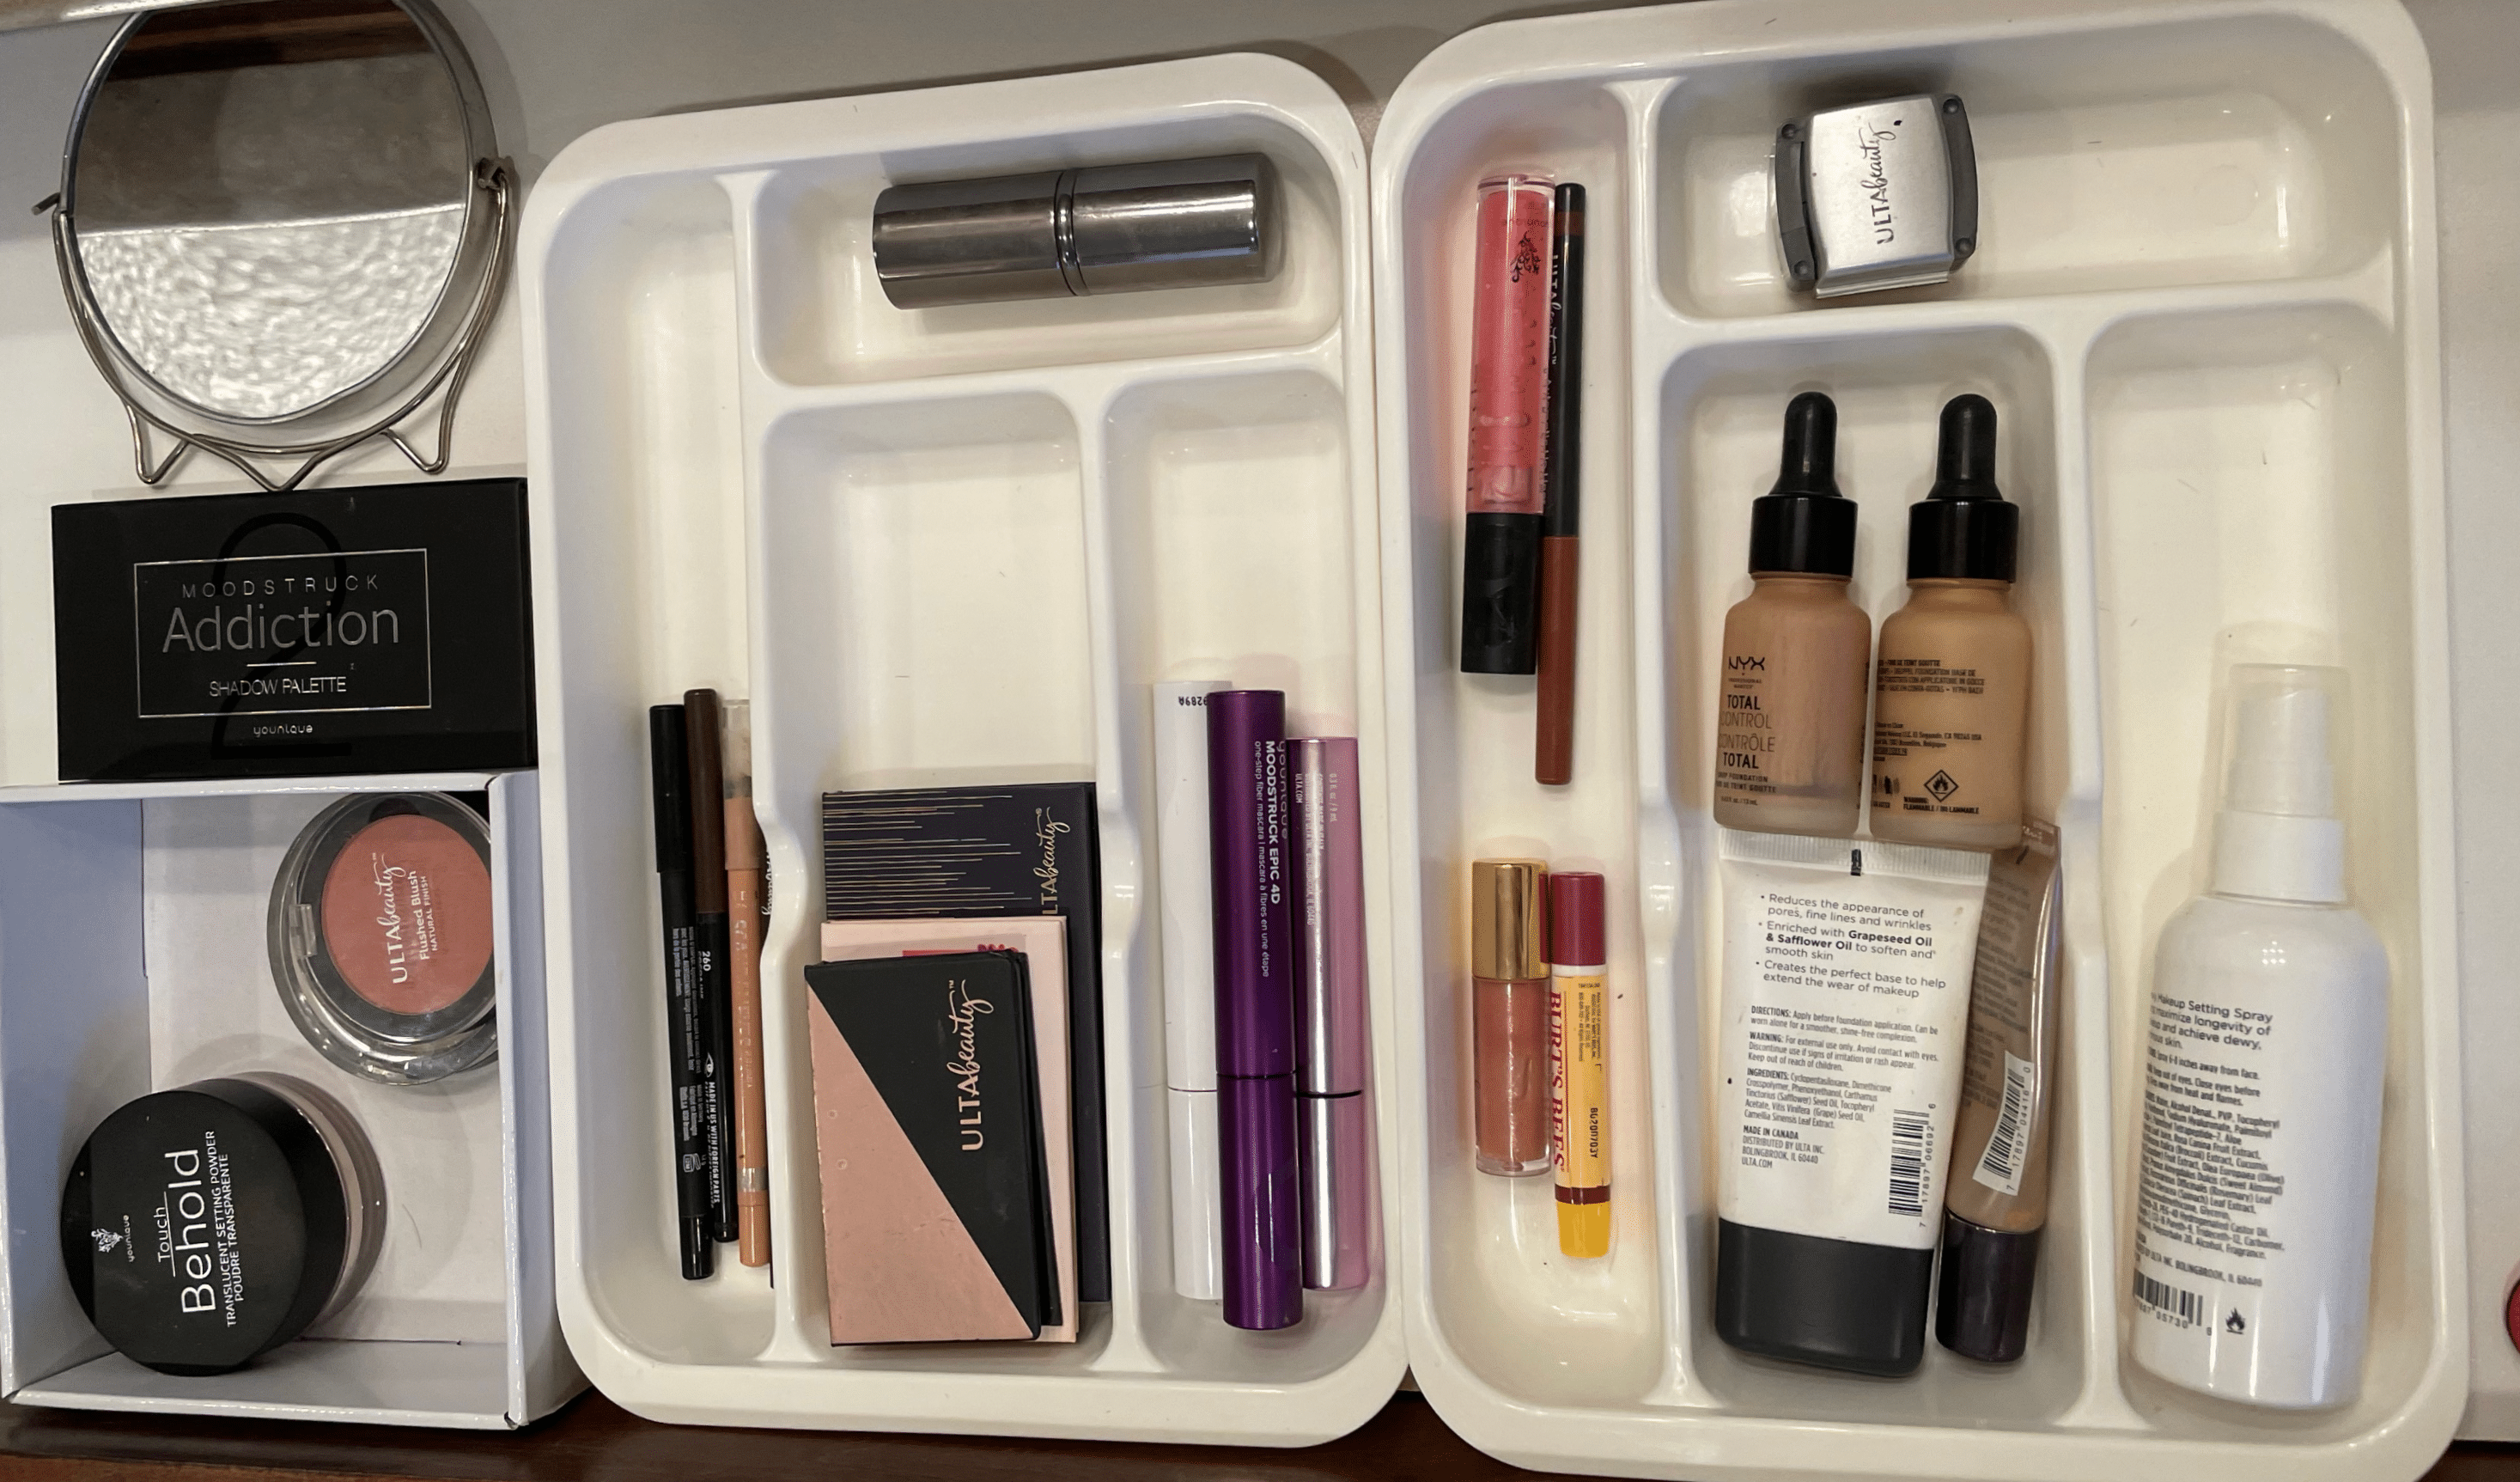 organized makeup drawer